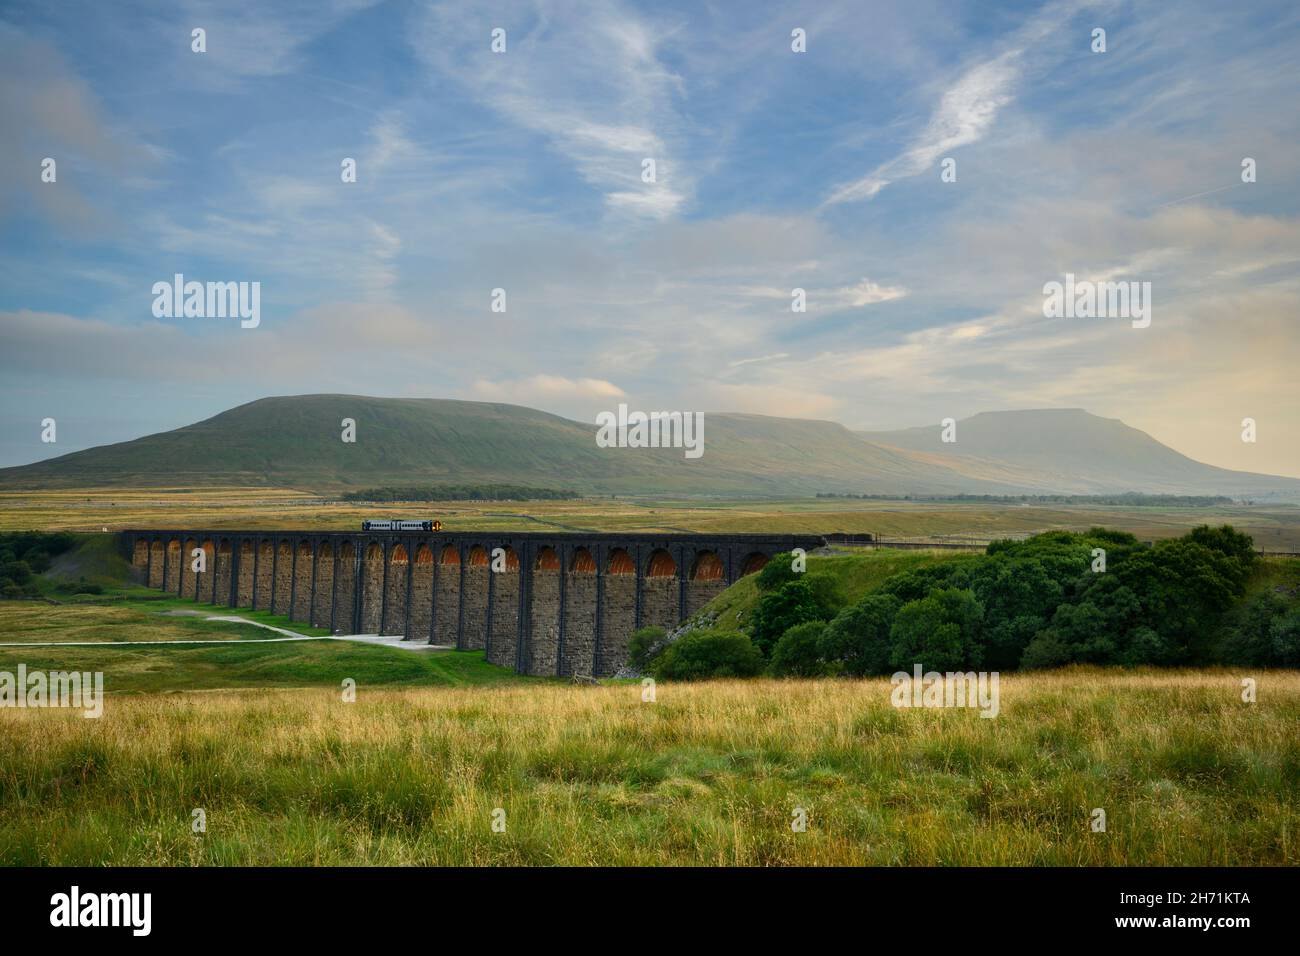 Pittoresque campagne vallée (locomotive sur le site touristique Ribblehead Viaduct, soleil sur les arches, hautes collines et montagne) - North Yorkshire Dales, Angleterre Royaume-Uni. Banque D'Images